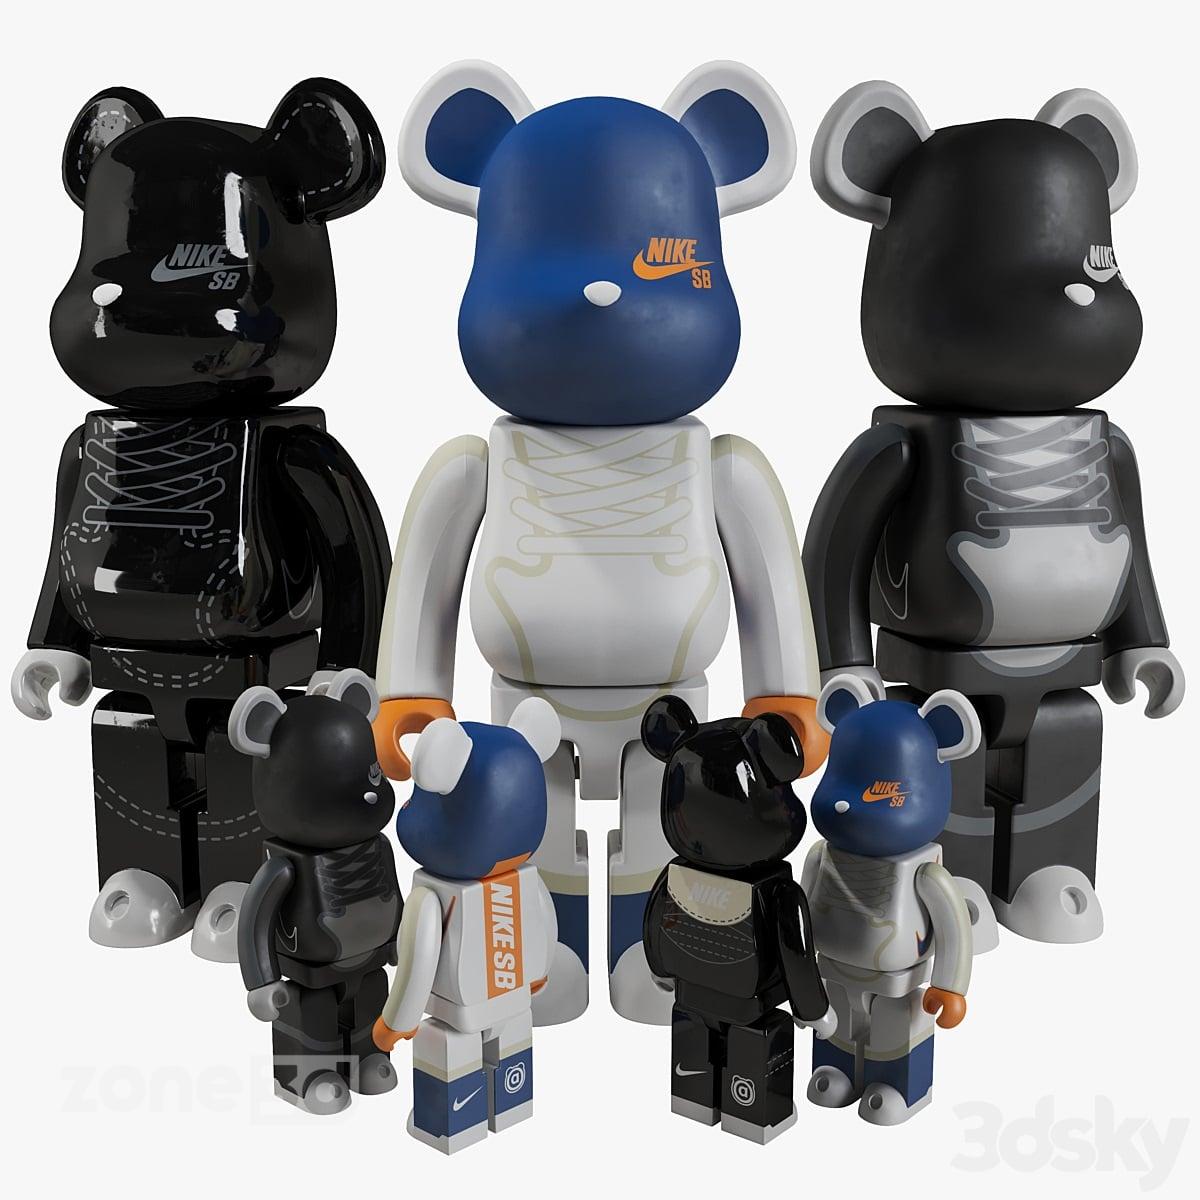 آبجکت ست مجسمه اسباب بازی پلاستیکی پنج عددی اتاق کودک مدل Bearbrick / NIKE